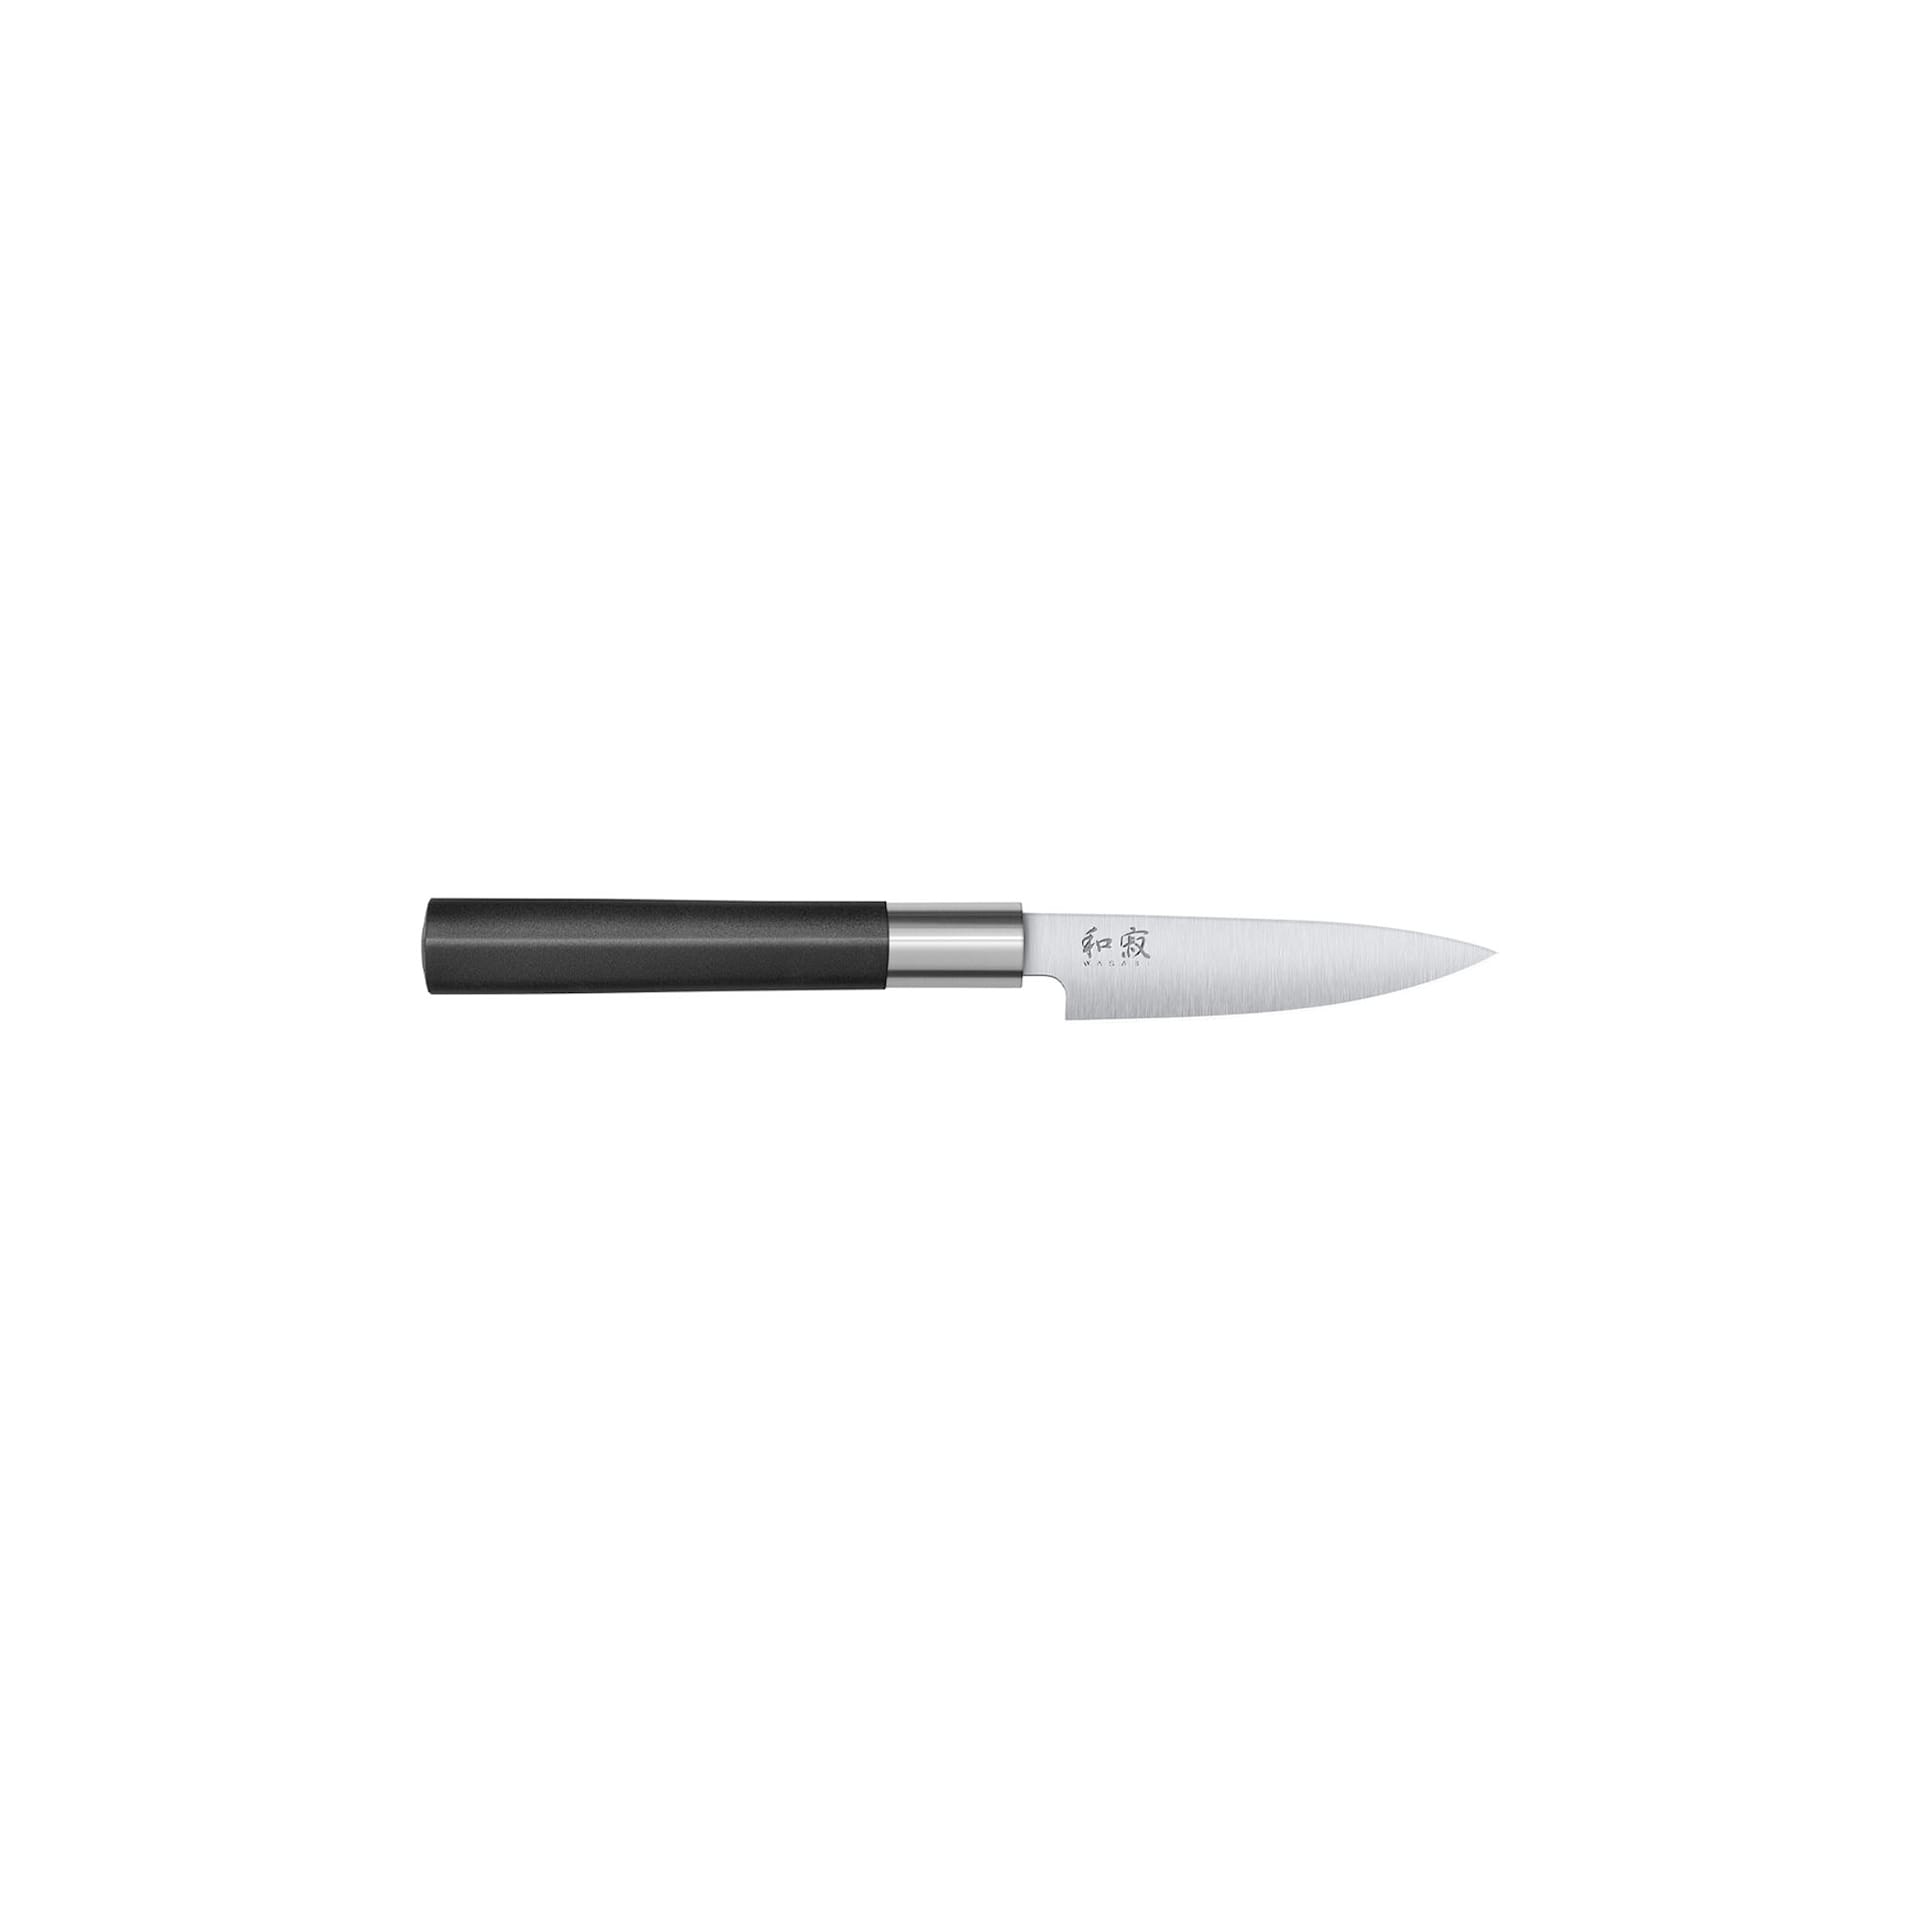 KAI WASABI Utility knife 10 cm - KAI - NO GA